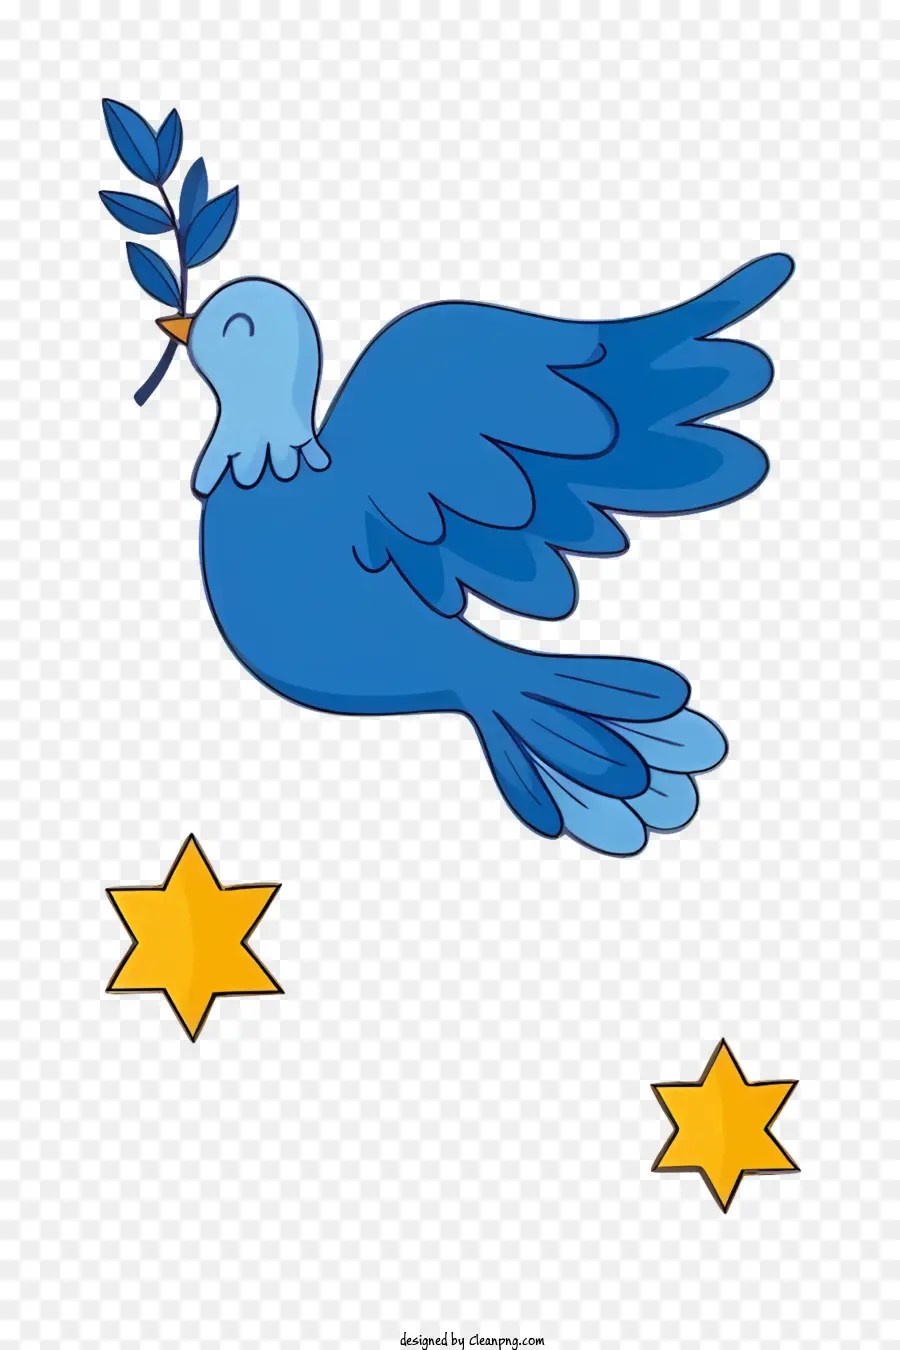 Blue Dove Olive Branch Peace Hope Fede cristiana - La colomba blu con il ramo olivo rappresenta la pace e l'unità